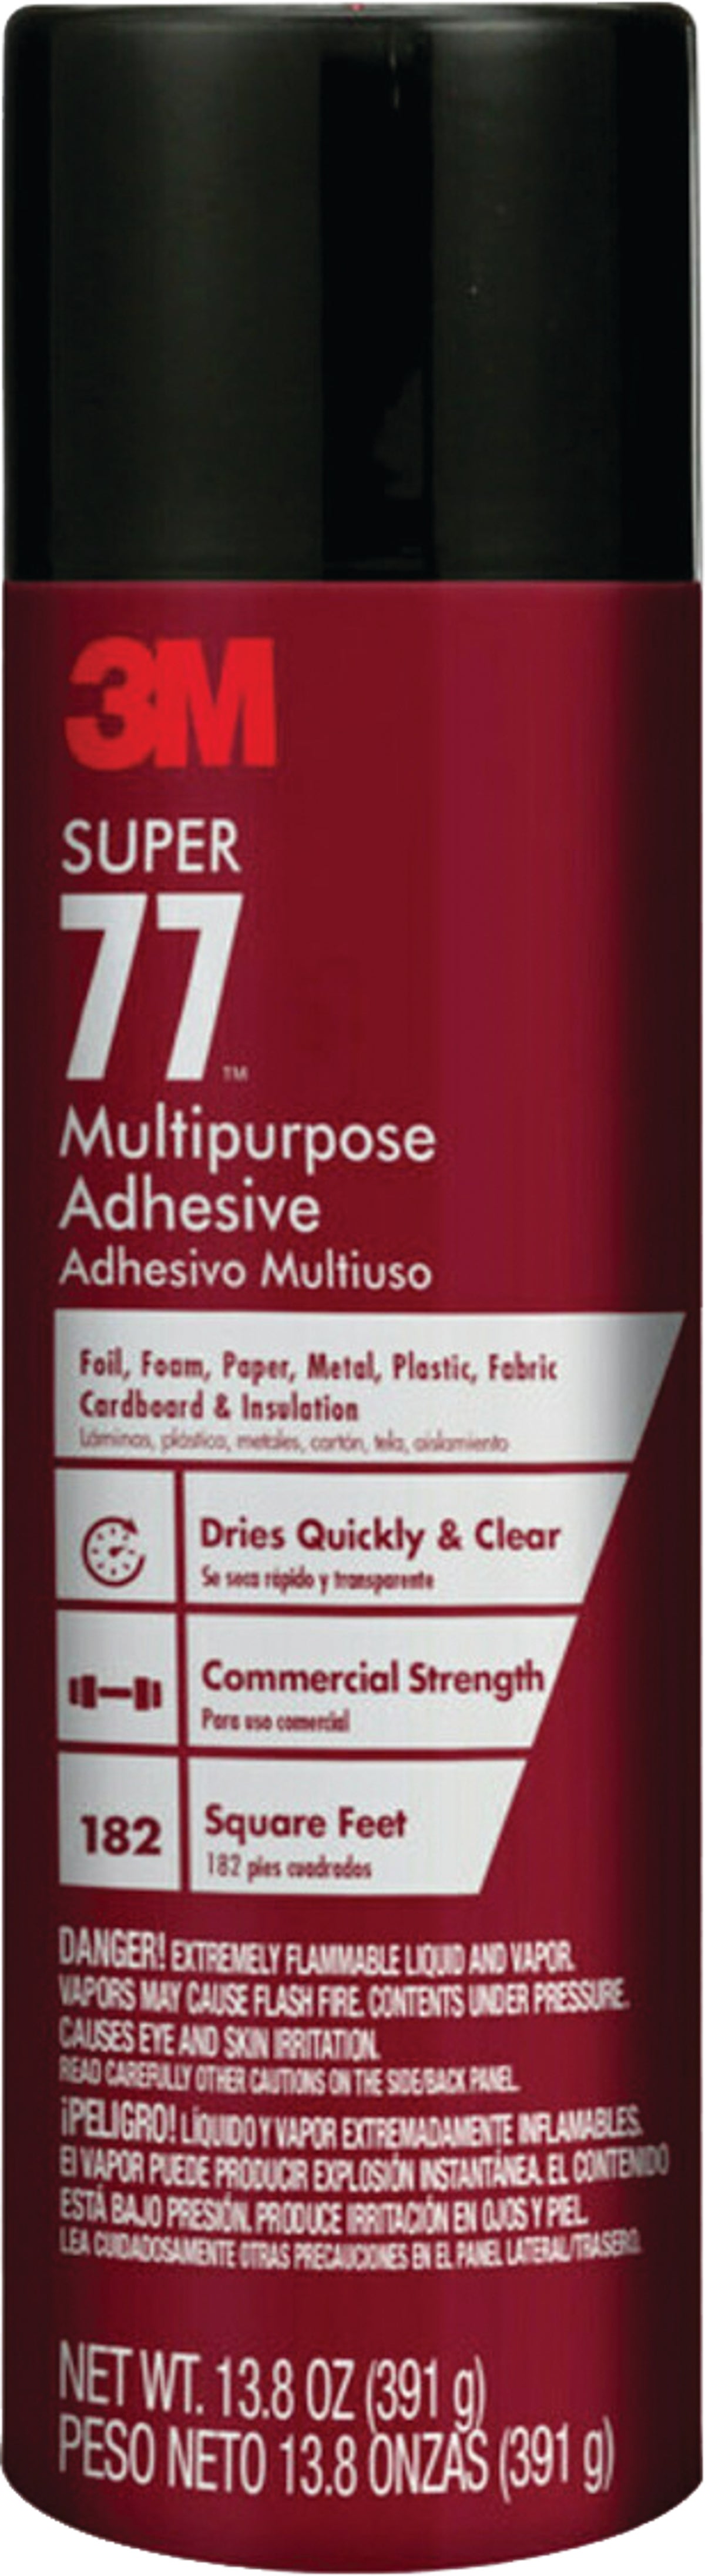 3M Super 77 Multipurpose Adhesive, 13.8 oz